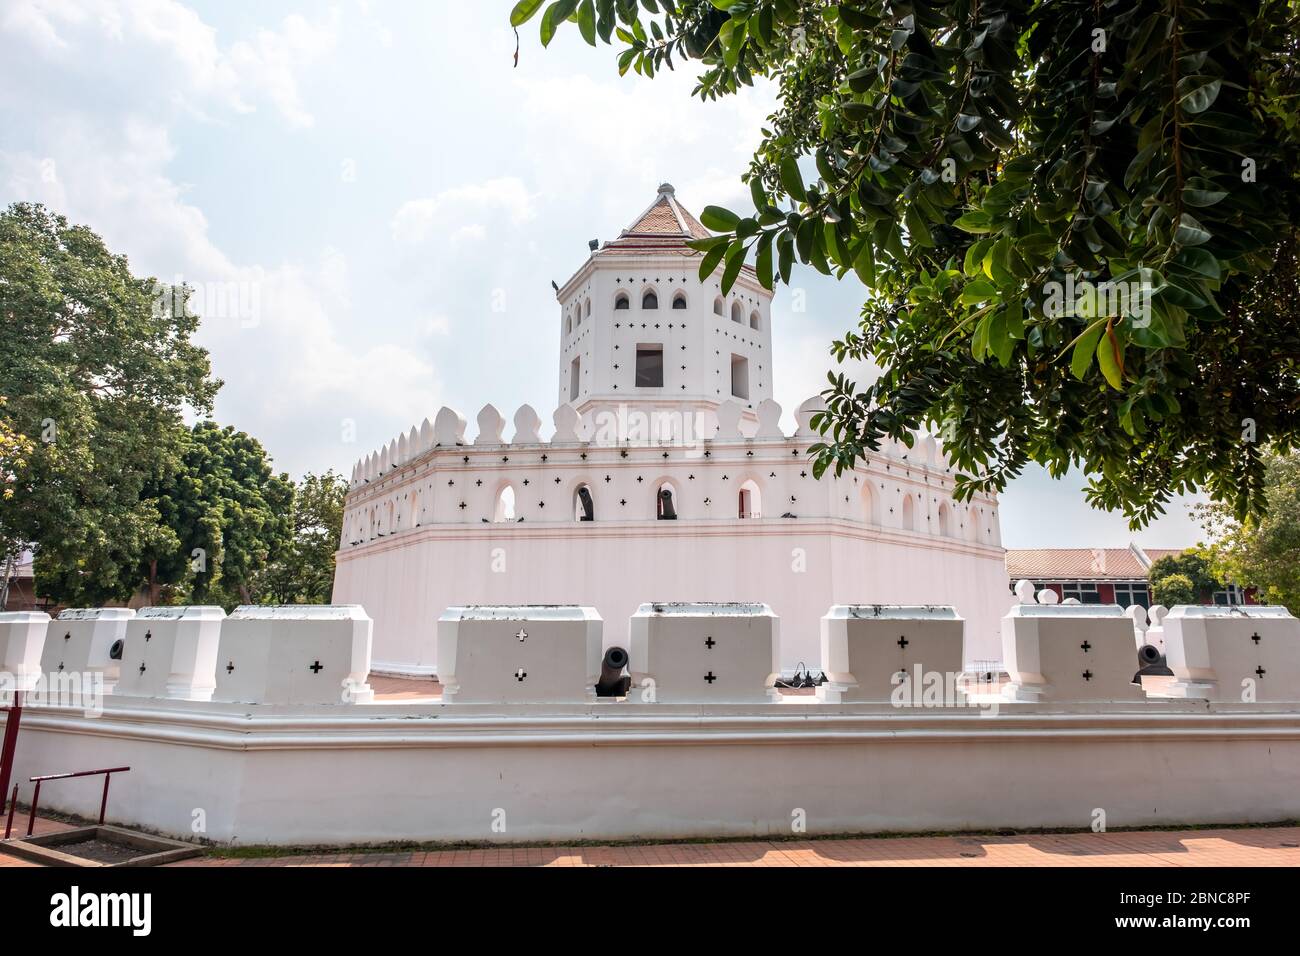 Le fort Phra Sumen est un château blanc historique situé dans le centre-ville de Bangkok Banque D'Images